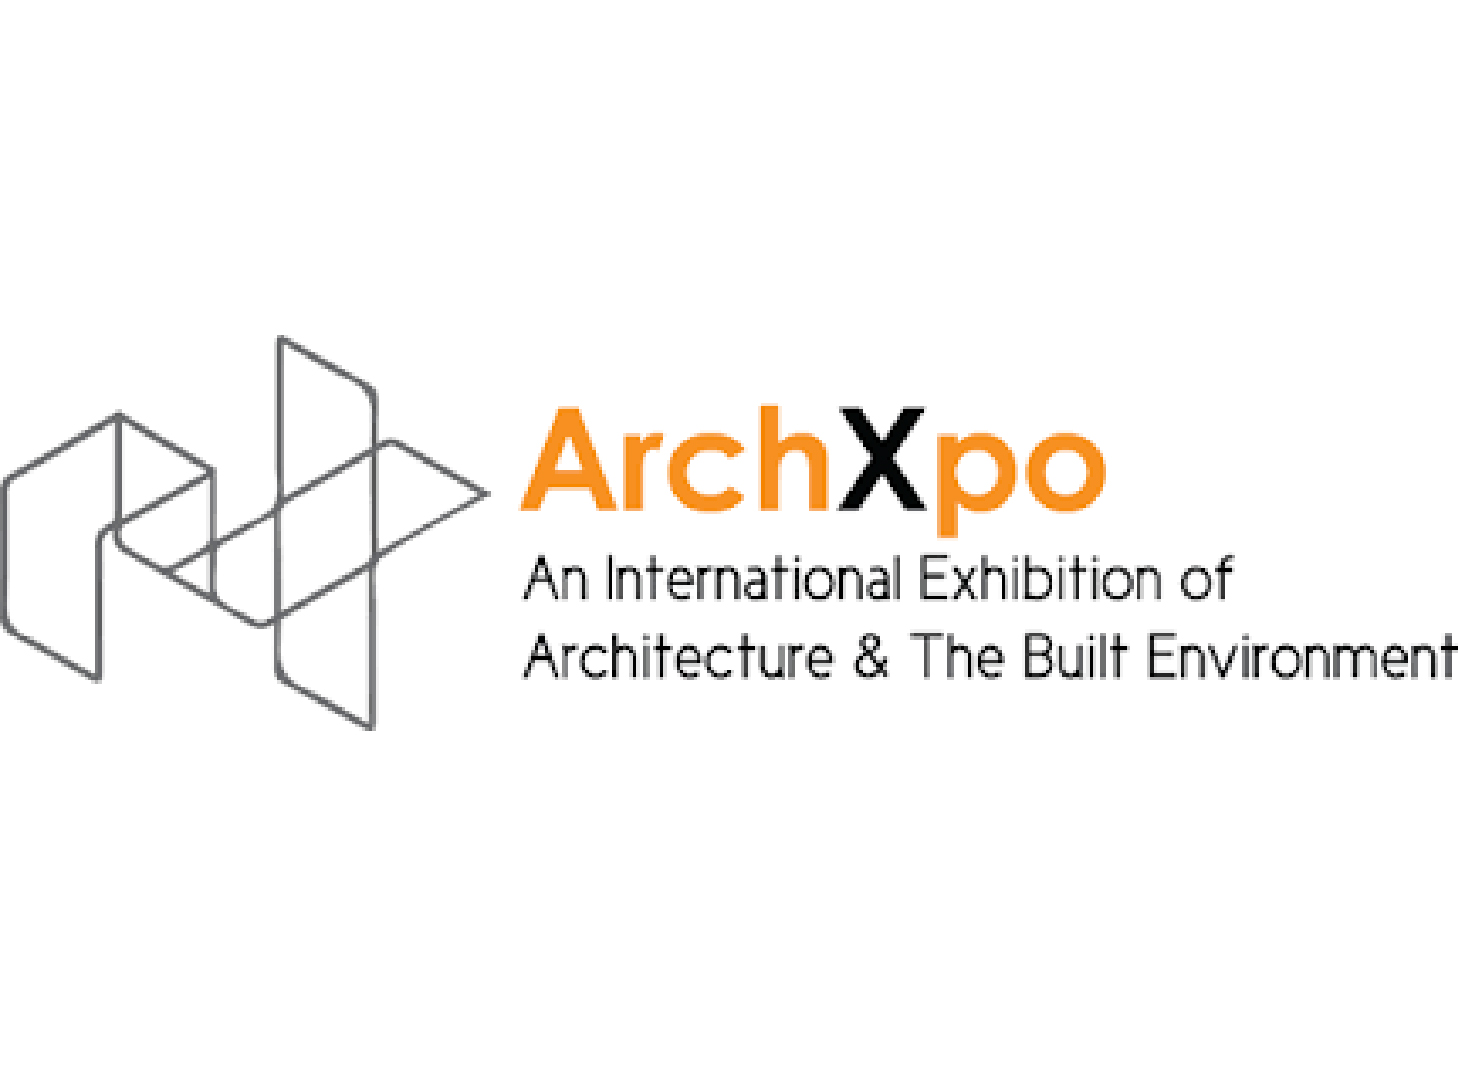 Archxpo 2019